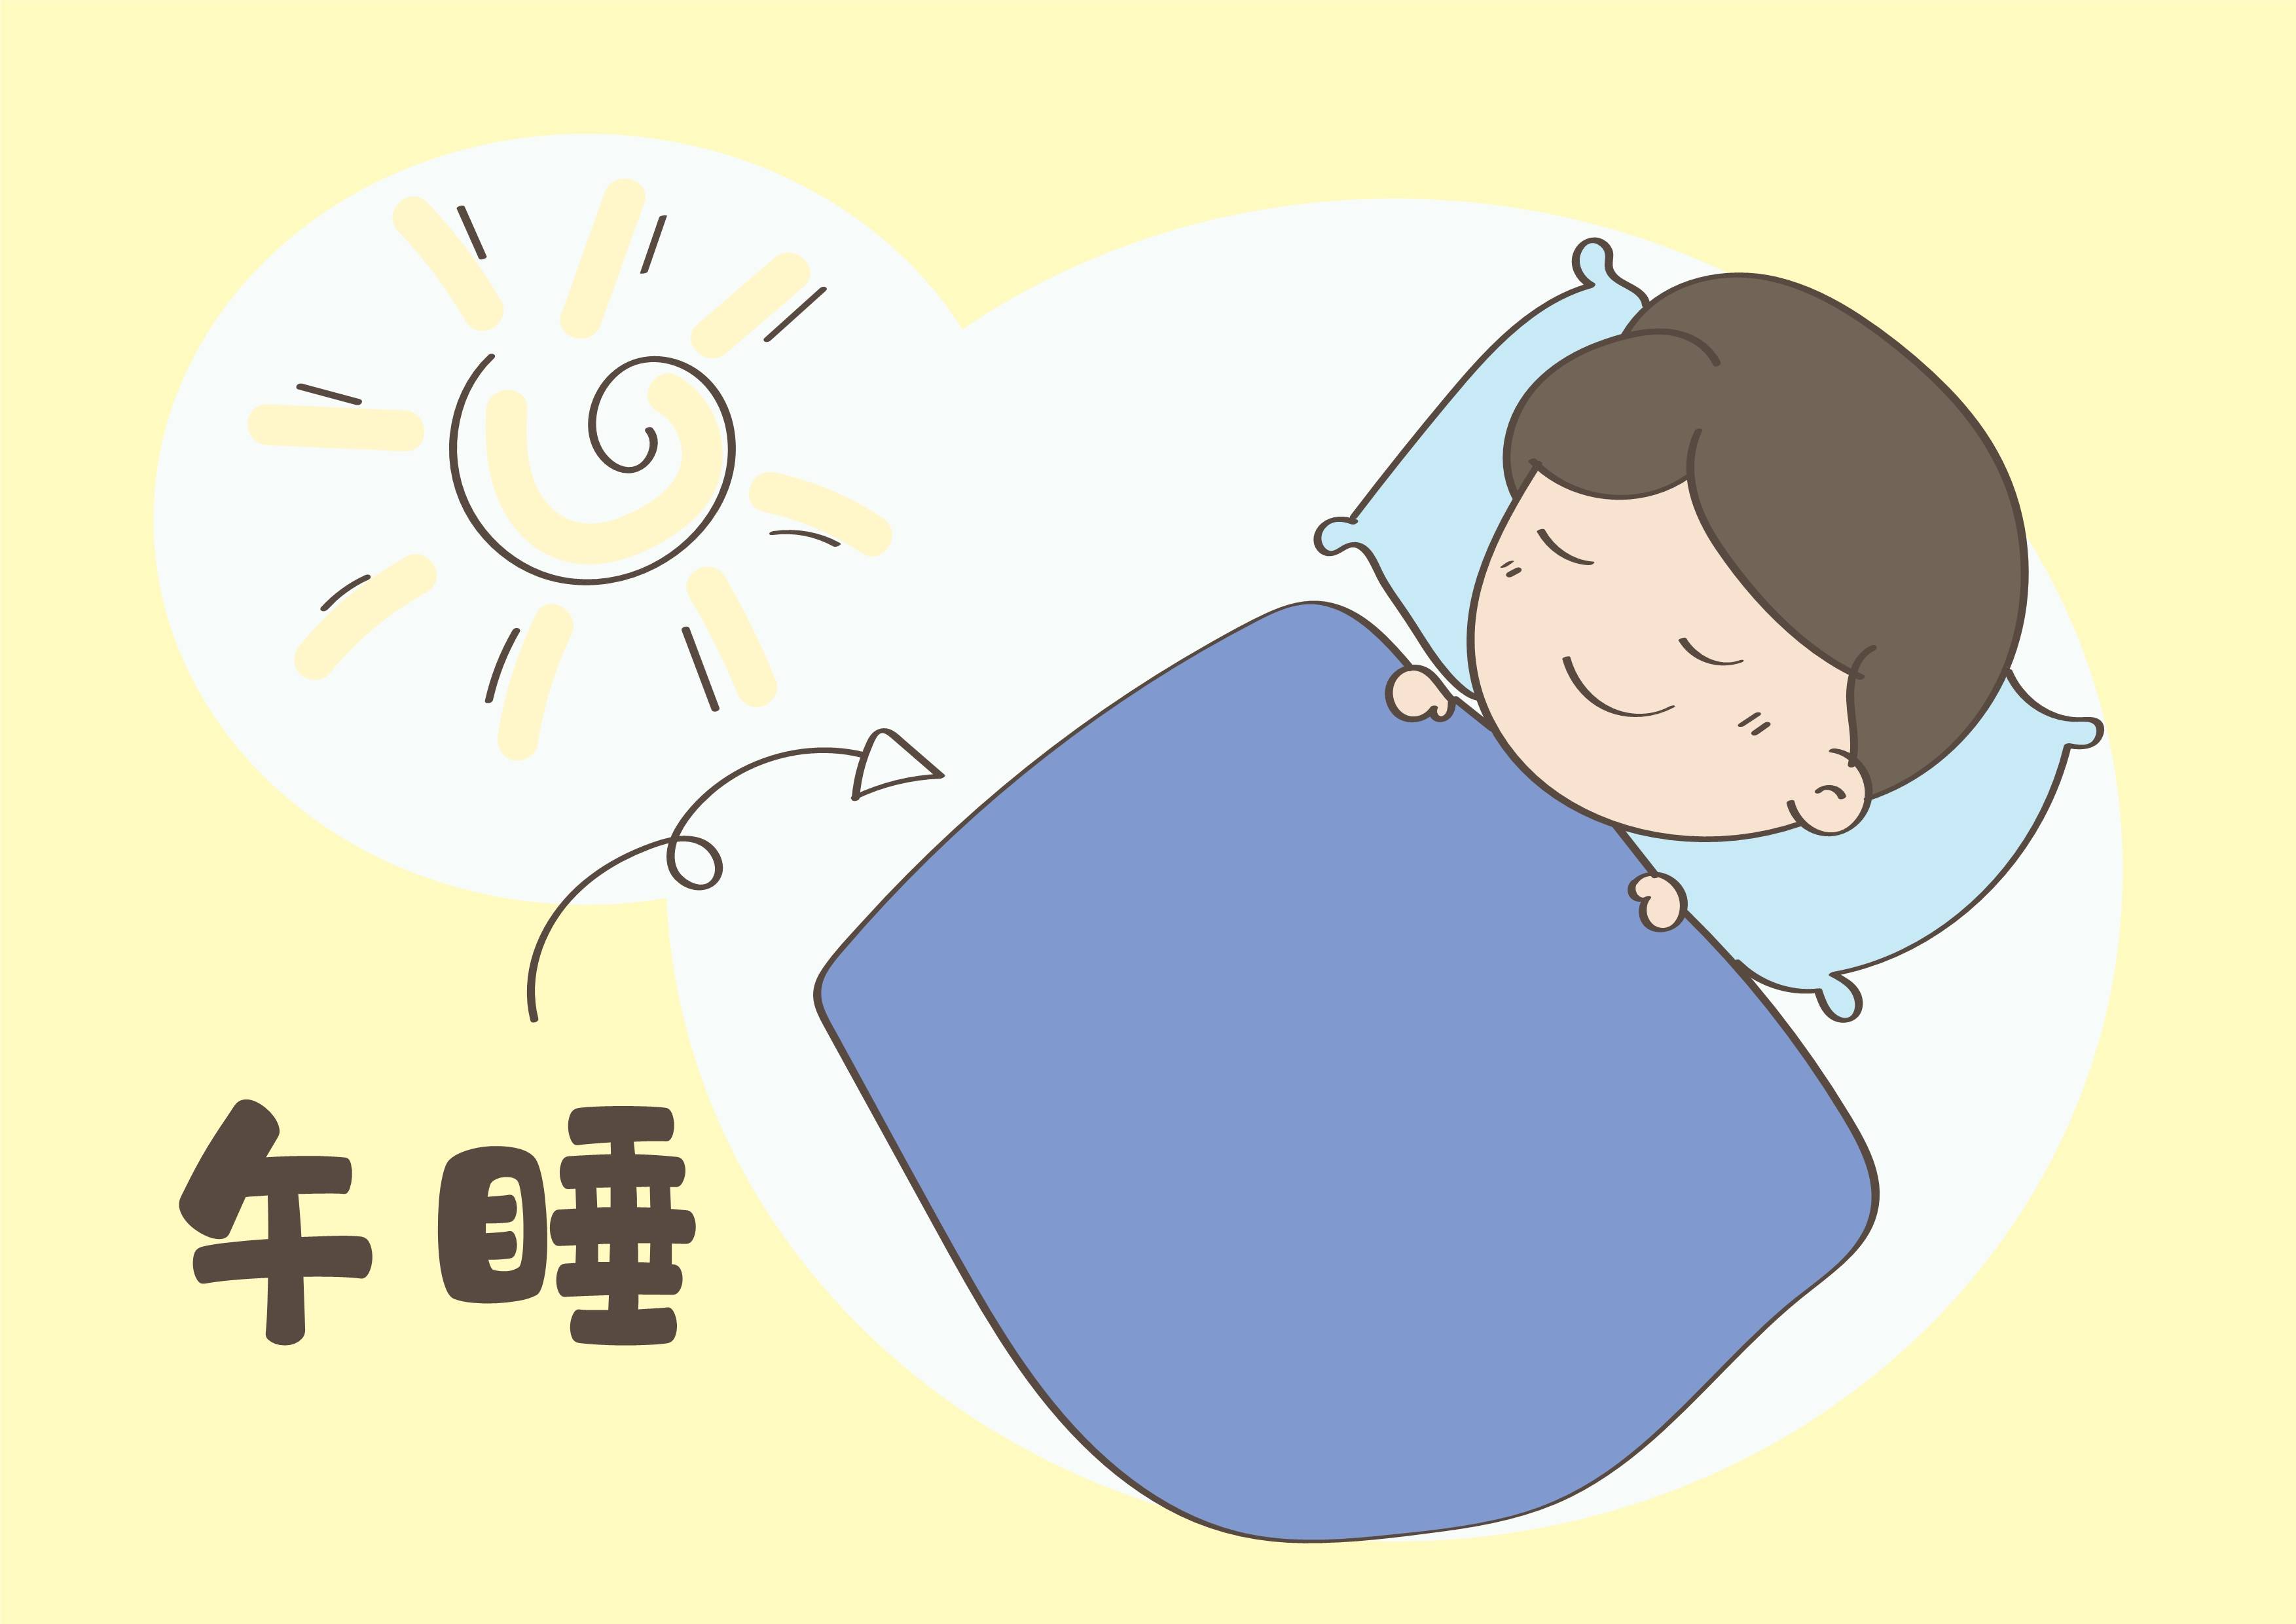 原创午睡虽然是个好习惯,但是强迫孩子午睡,其中危害你知道多少呢?